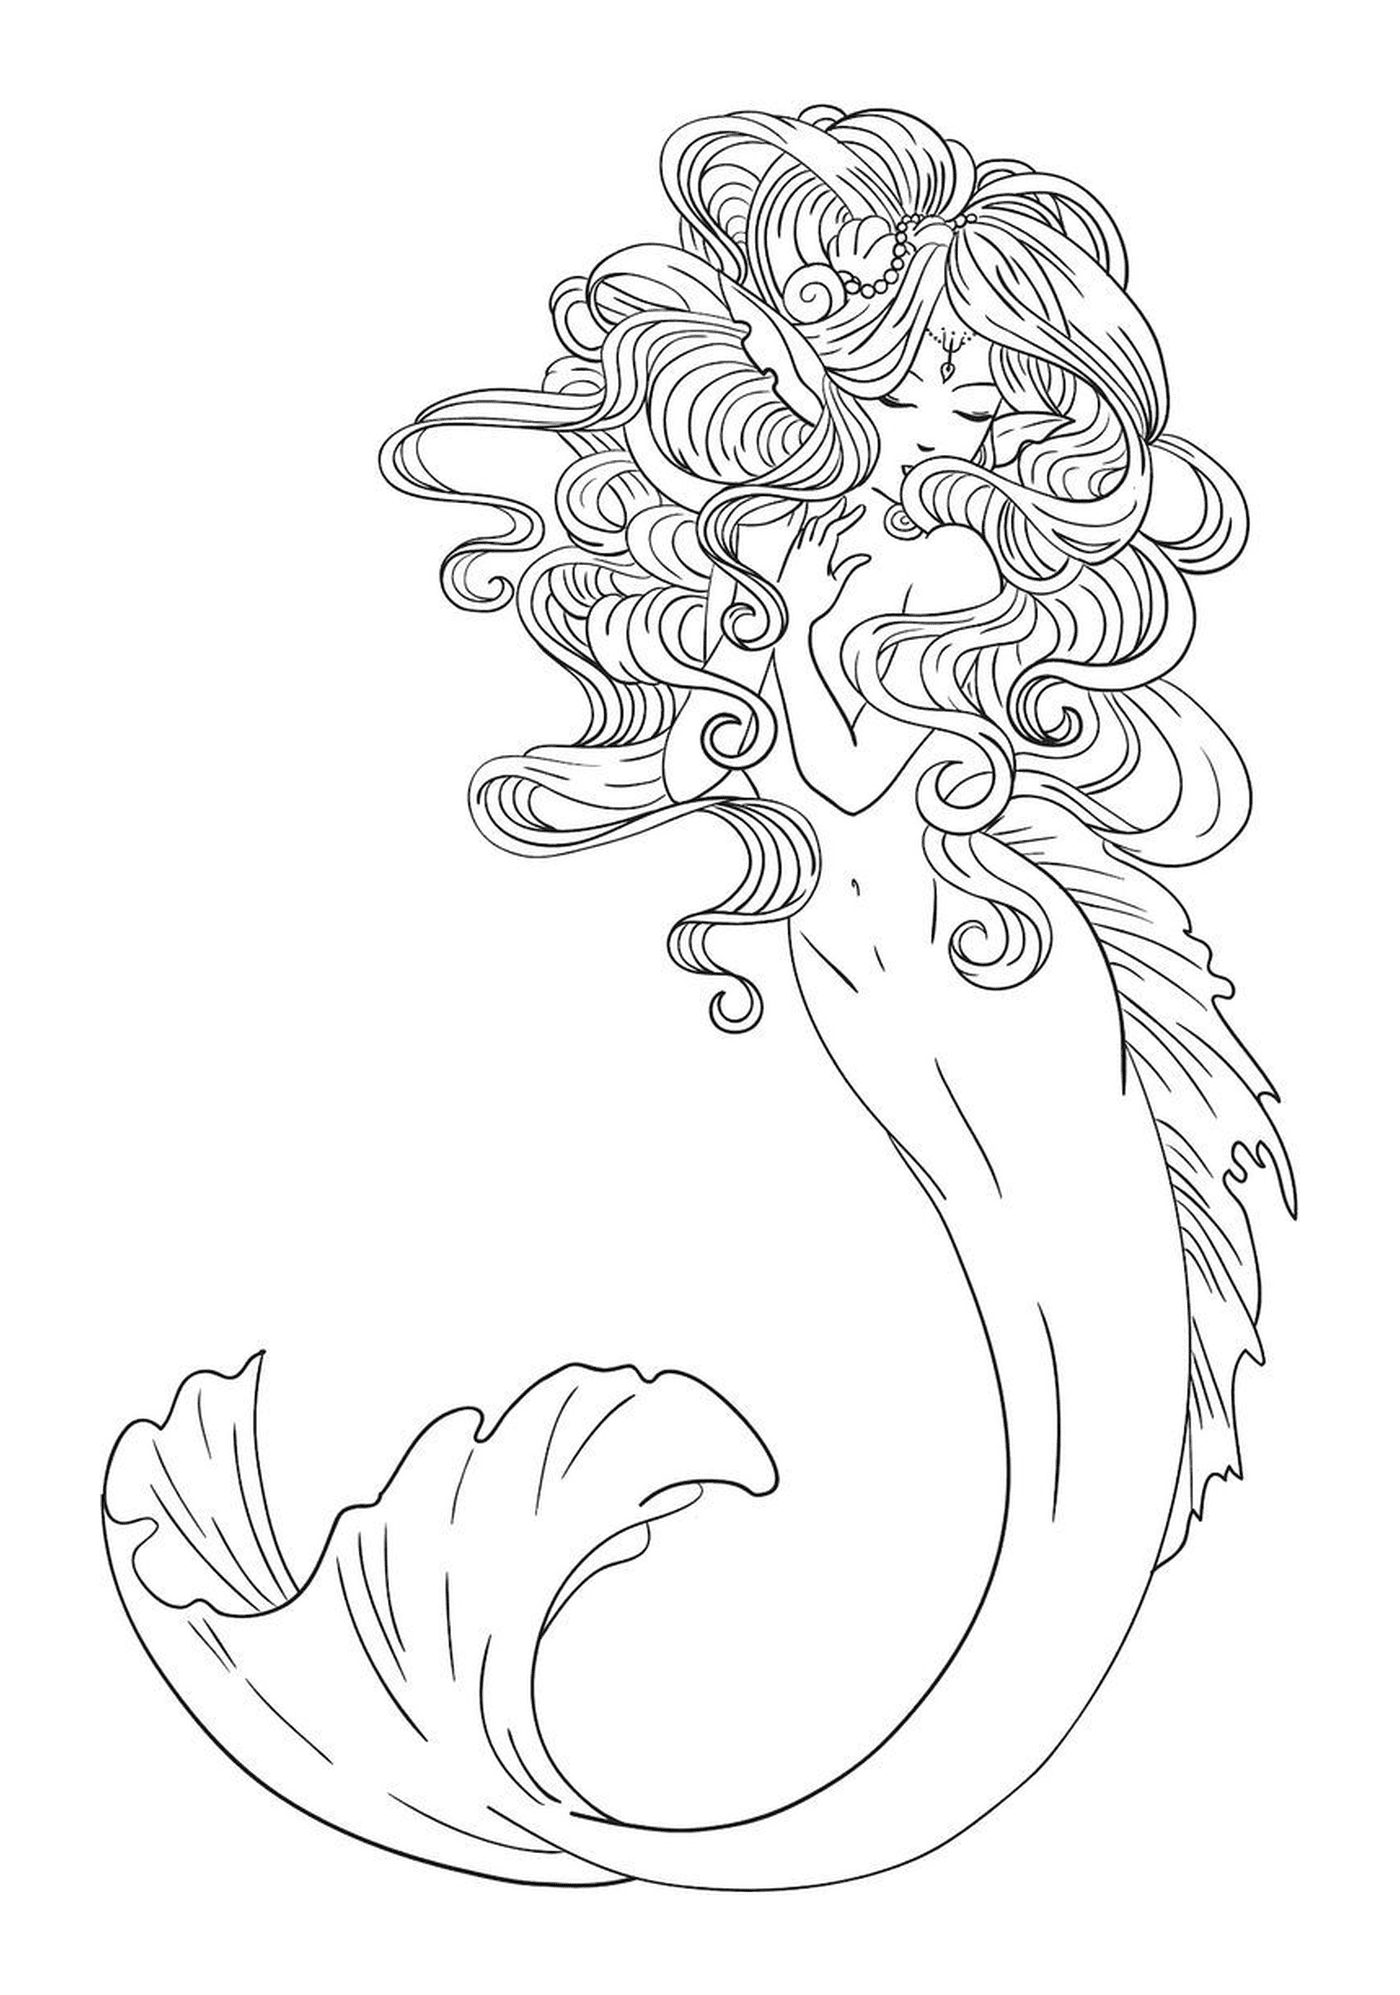  Elegante sirena de mar 